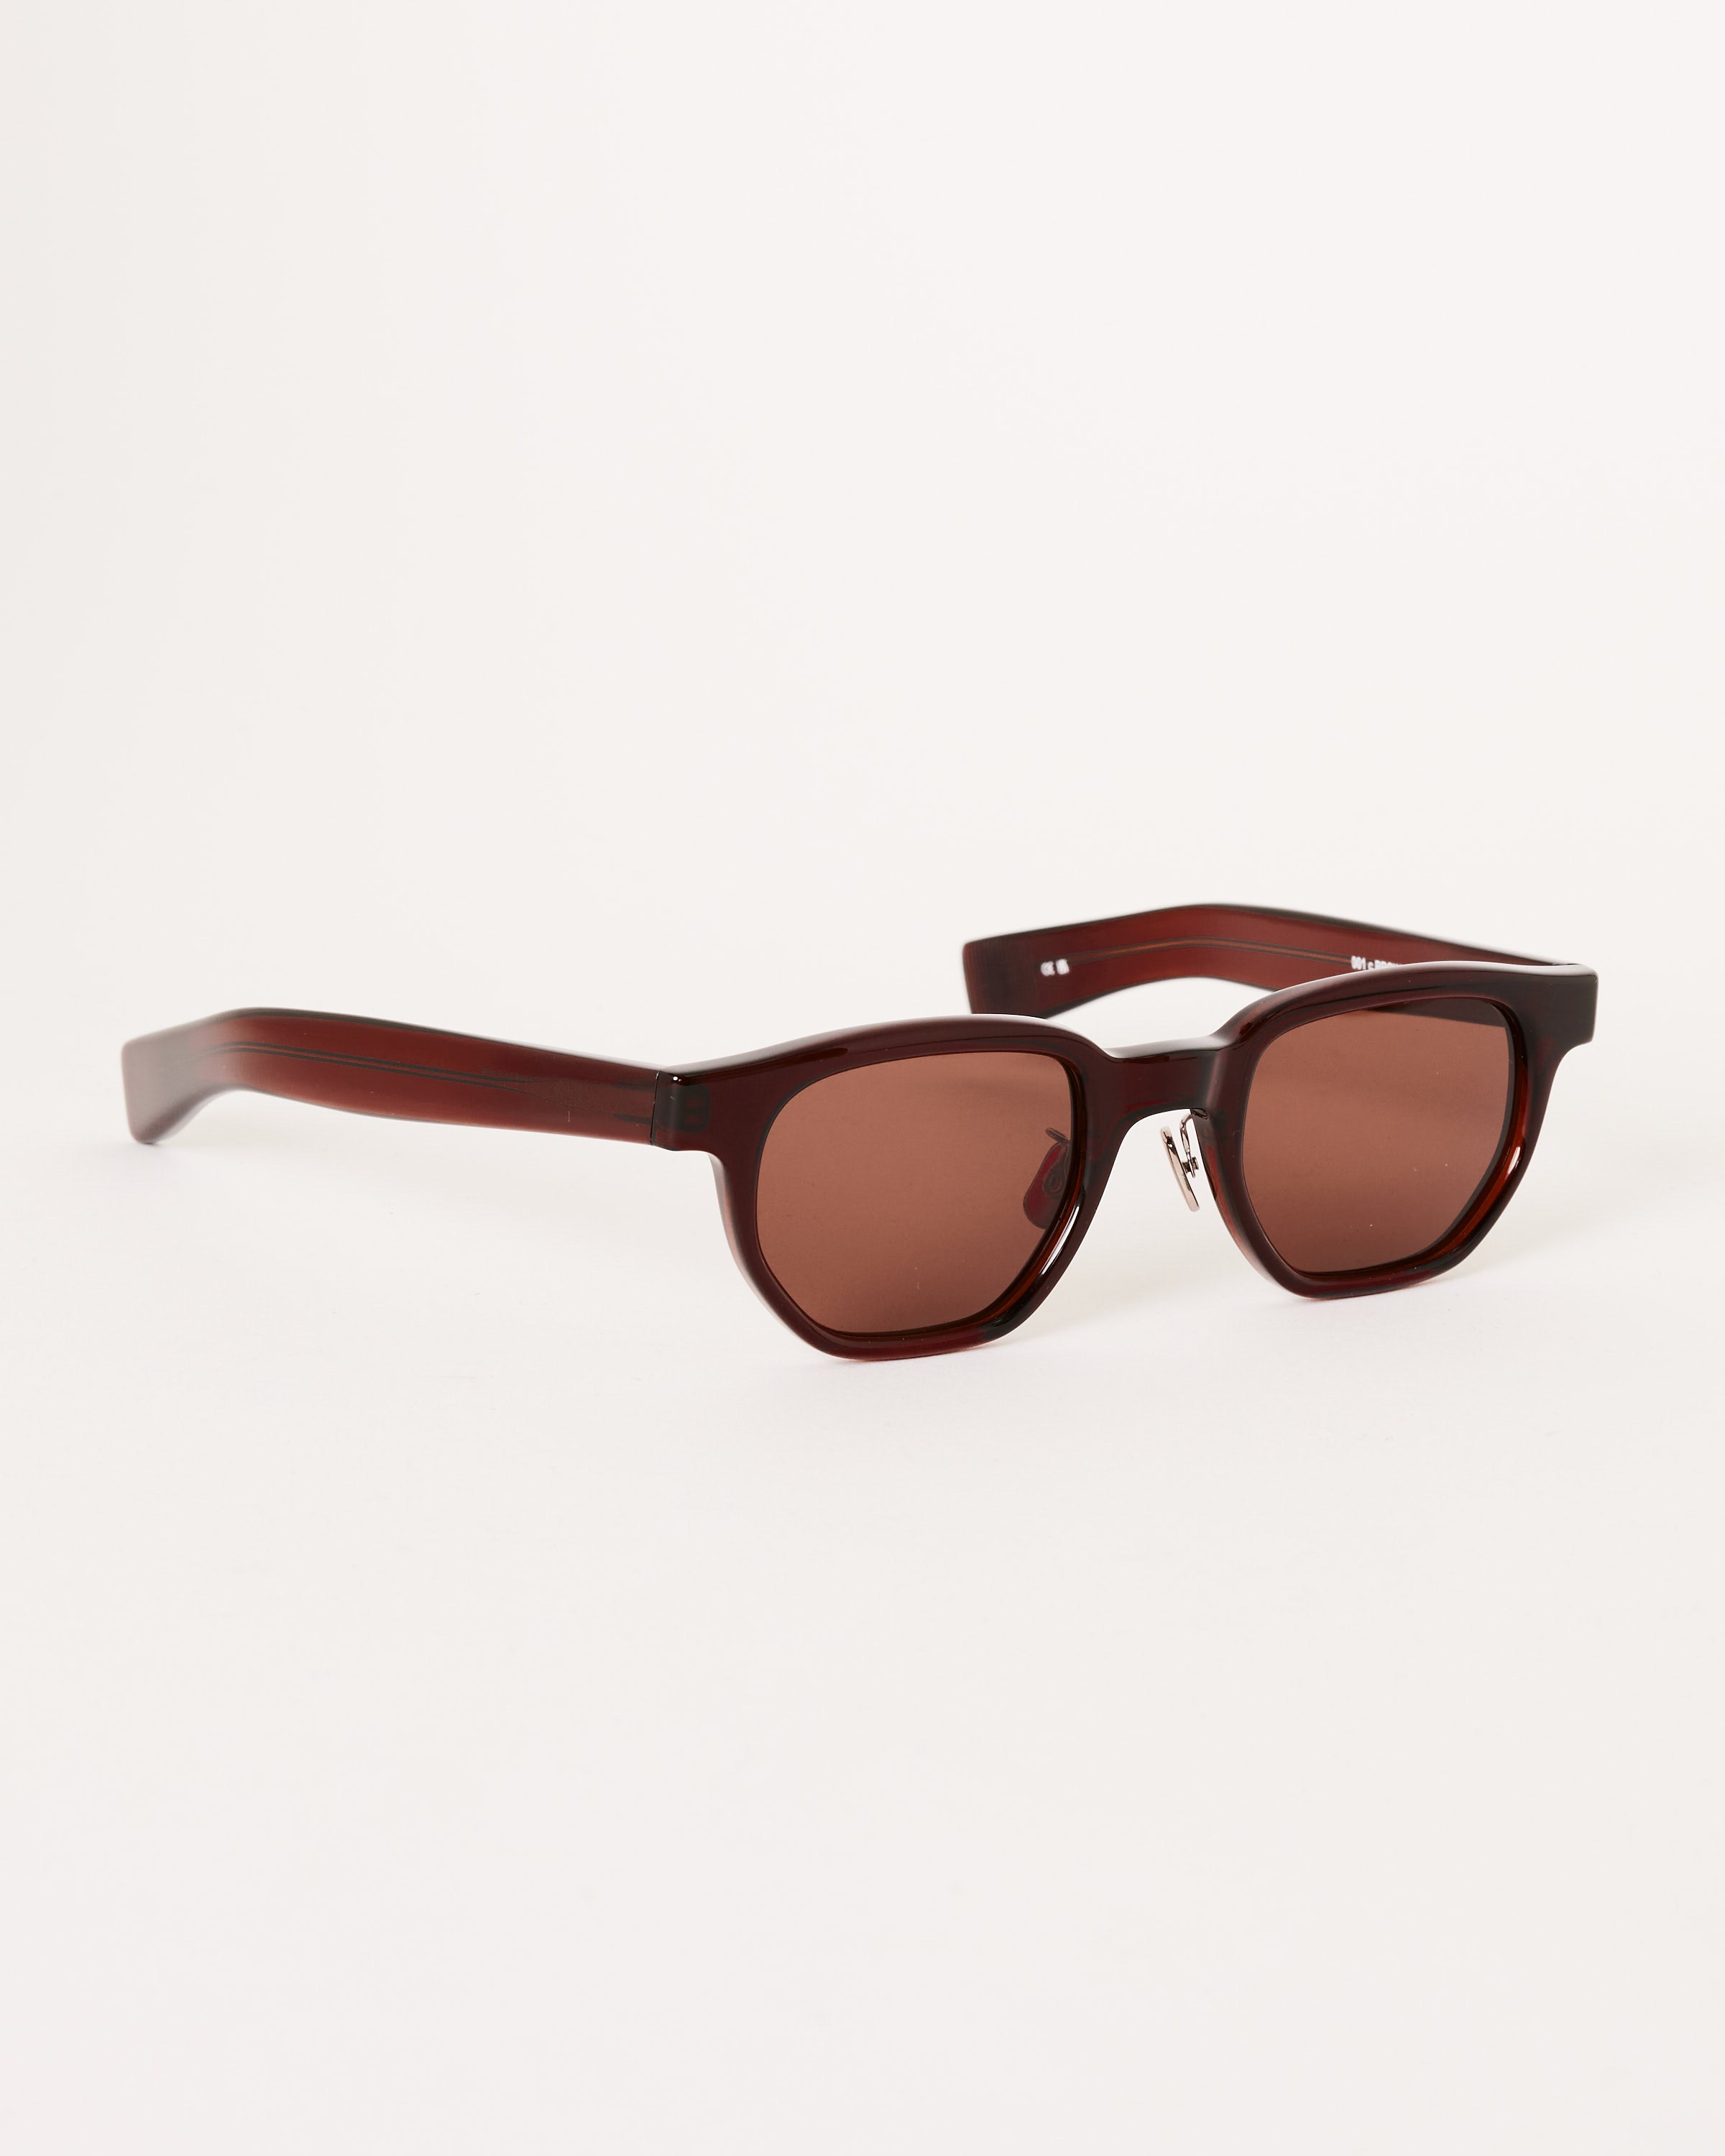 Auralee x Eyevan 7285 Sunglasses in Brown